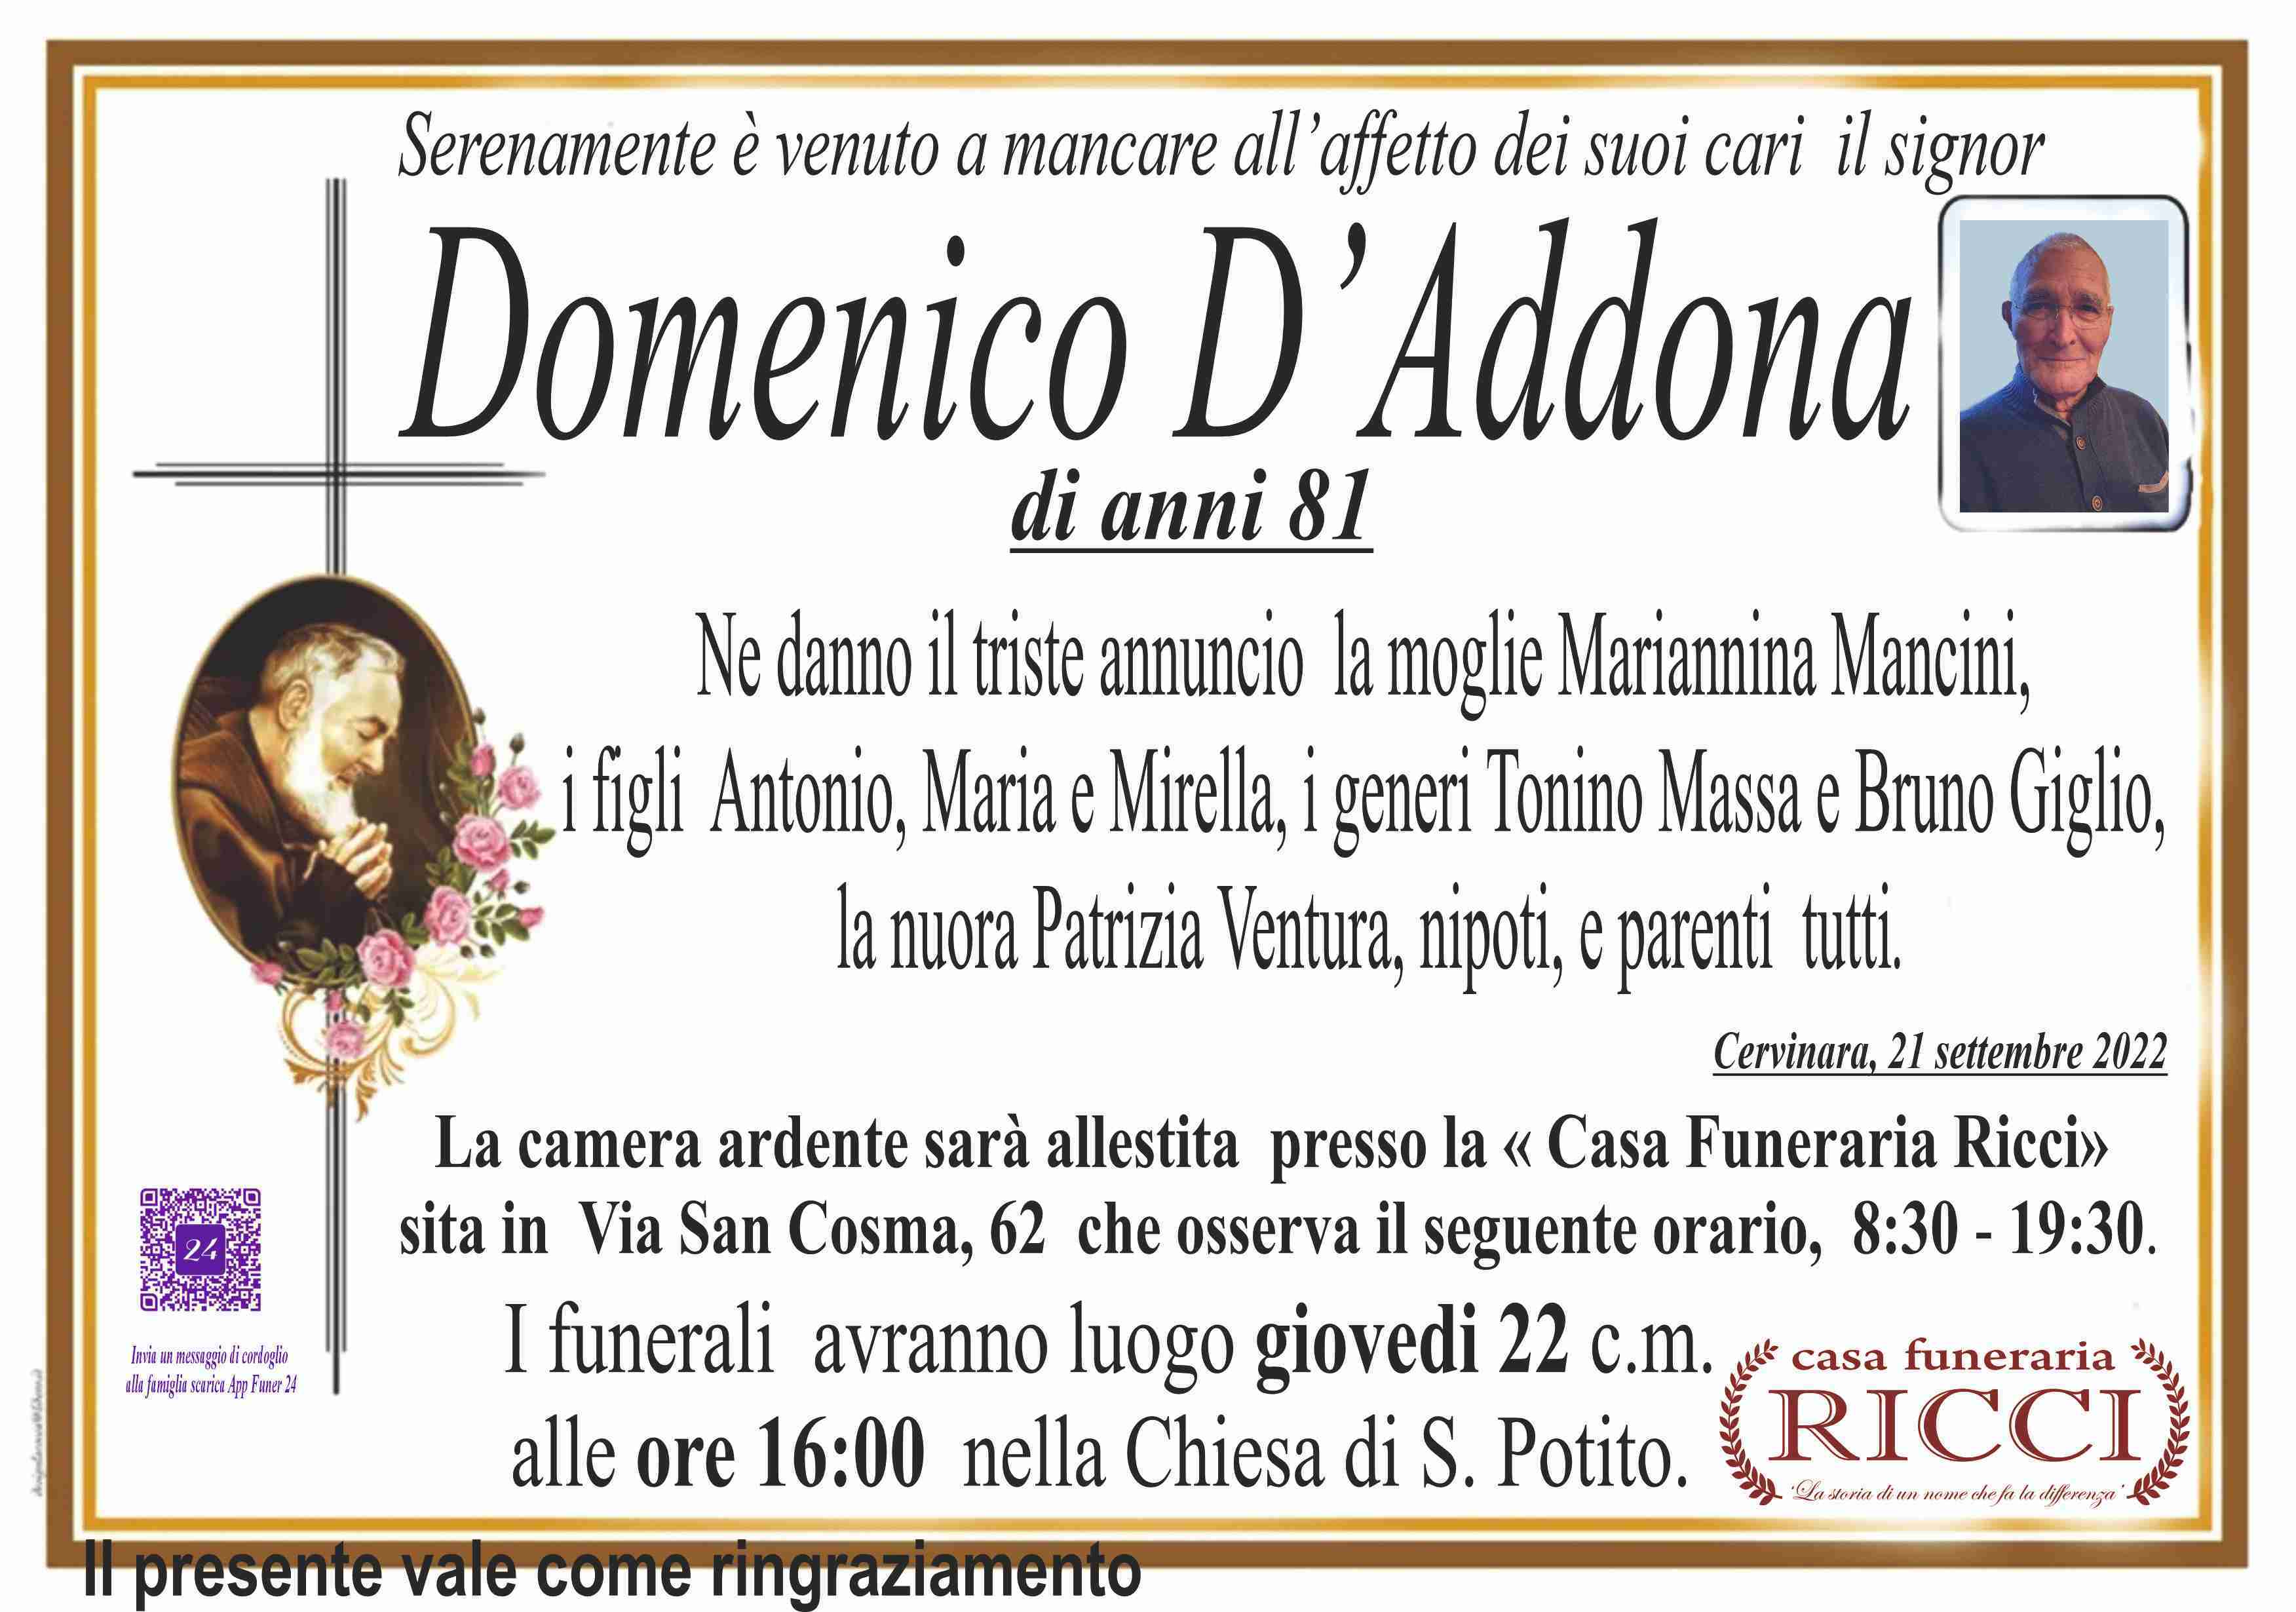 Domenico D'Addona